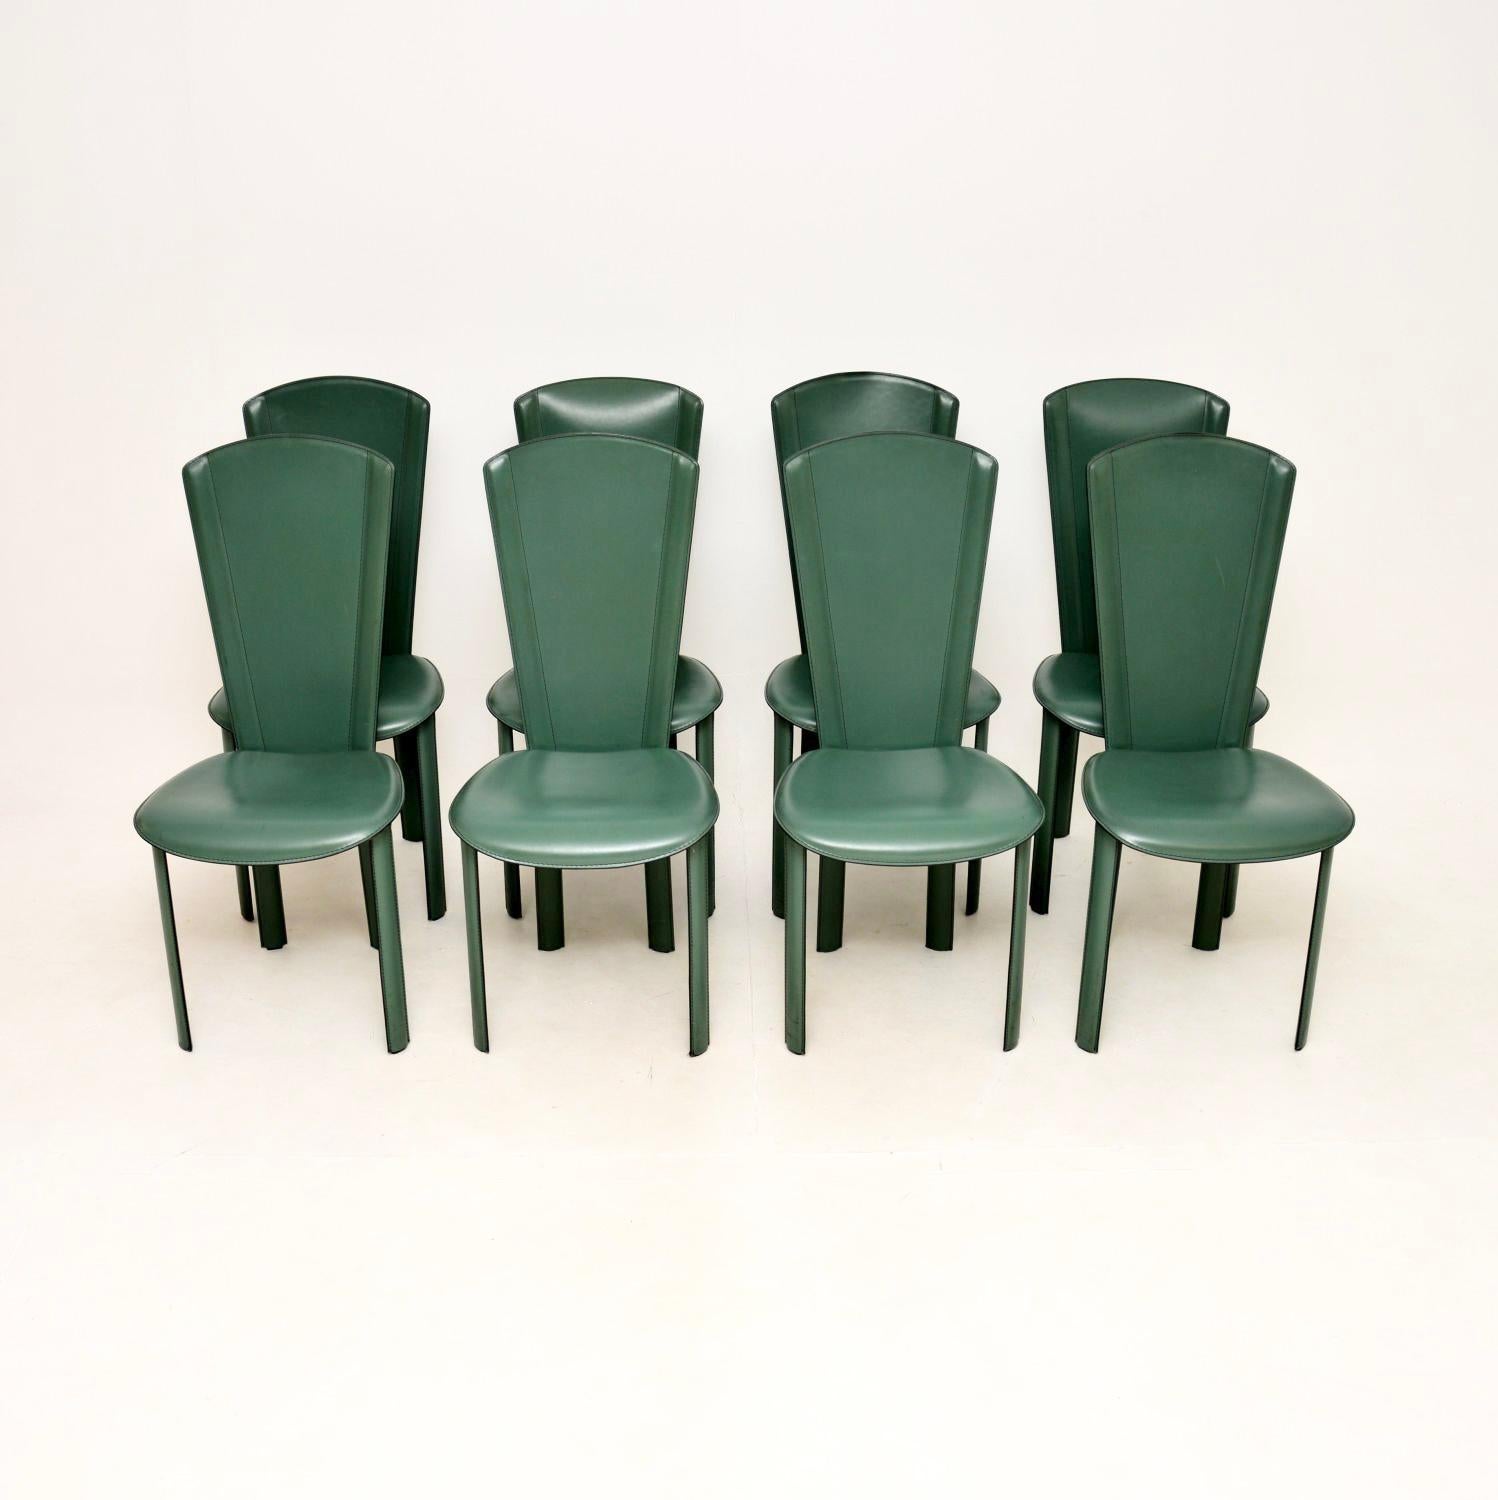 Un ensemble de huit chaises de salle à manger en cuir italien vintage, élégantes, confortables et extrêmement bien fabriquées par Vintage By. Fabriqués en Italie, ils datent des années 1980.

La qualité est exceptionnelle, ils ont des cadres en